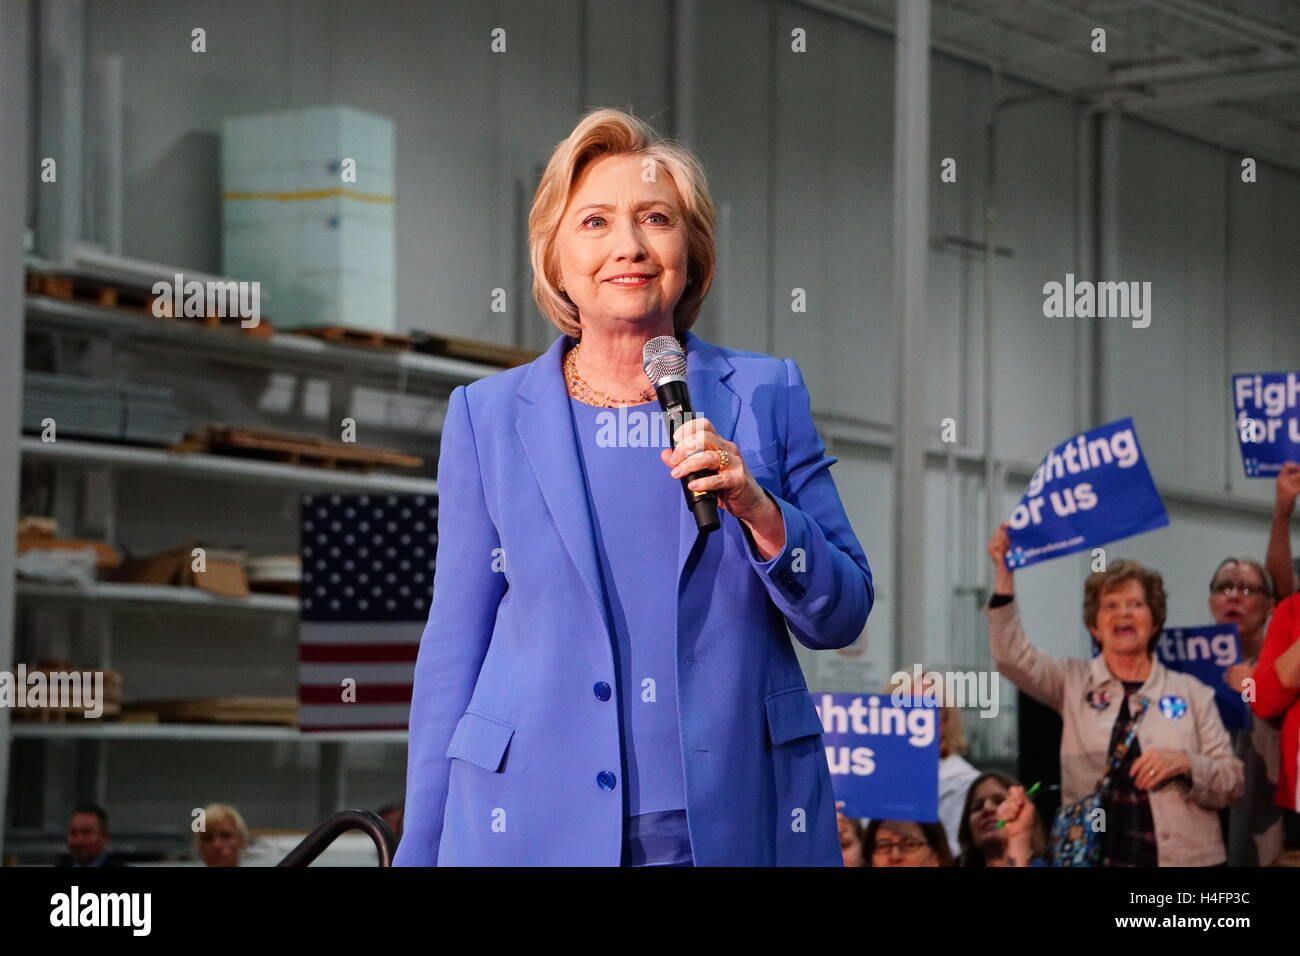 Demokratischen Präsidentschafts Kandidat Hillary Clinton spricht während einer Kundgebung am 15. Mai 2016 in Louisville, Kentucky. Stockfoto